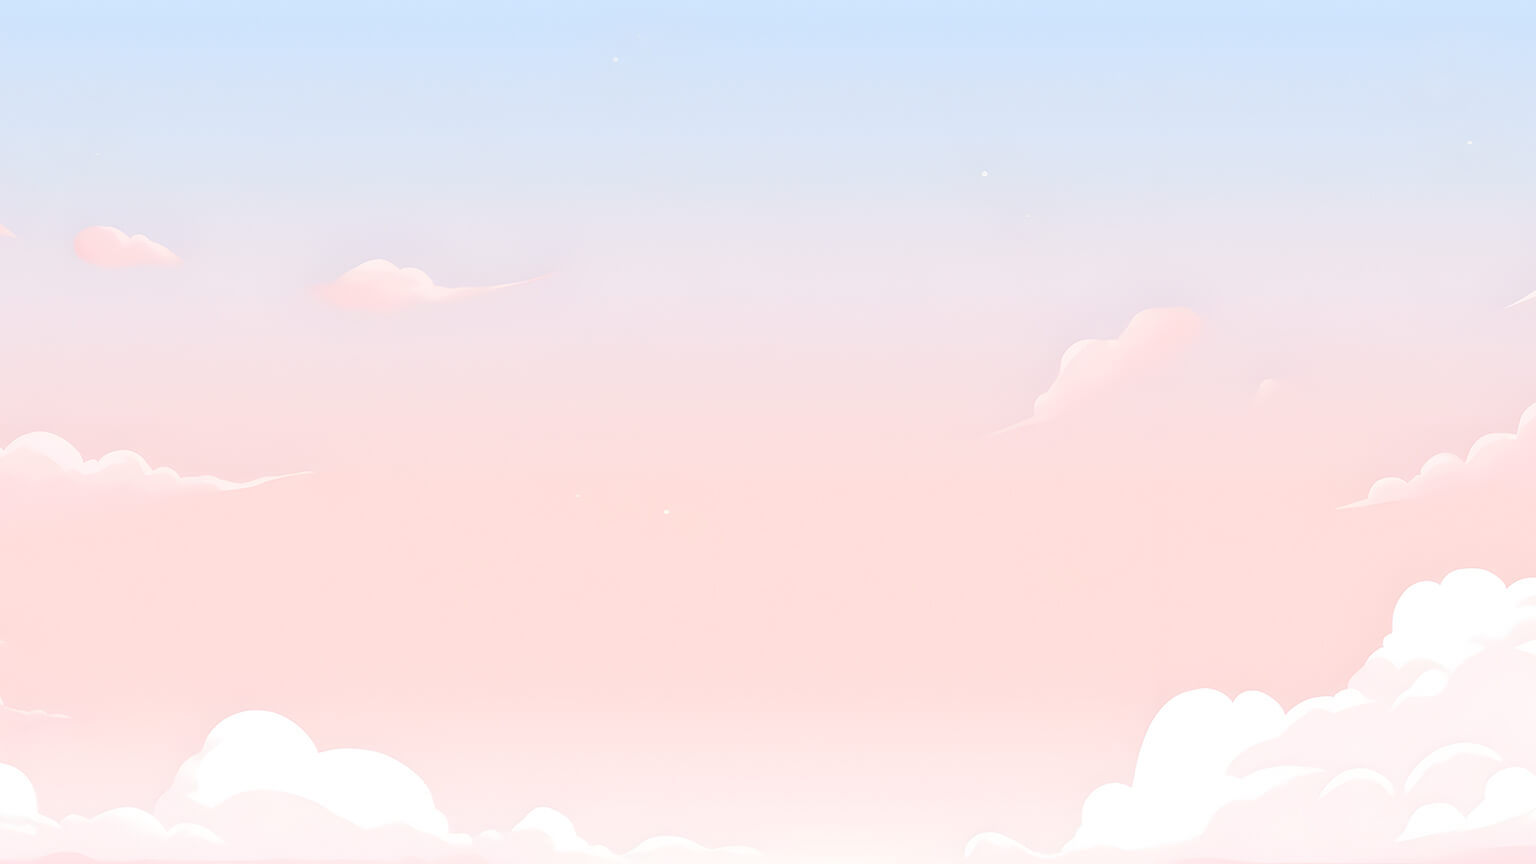 ☁️✨ Aesthetic Spacey Purple-Pink Clouds Desktop Wallpaper HD